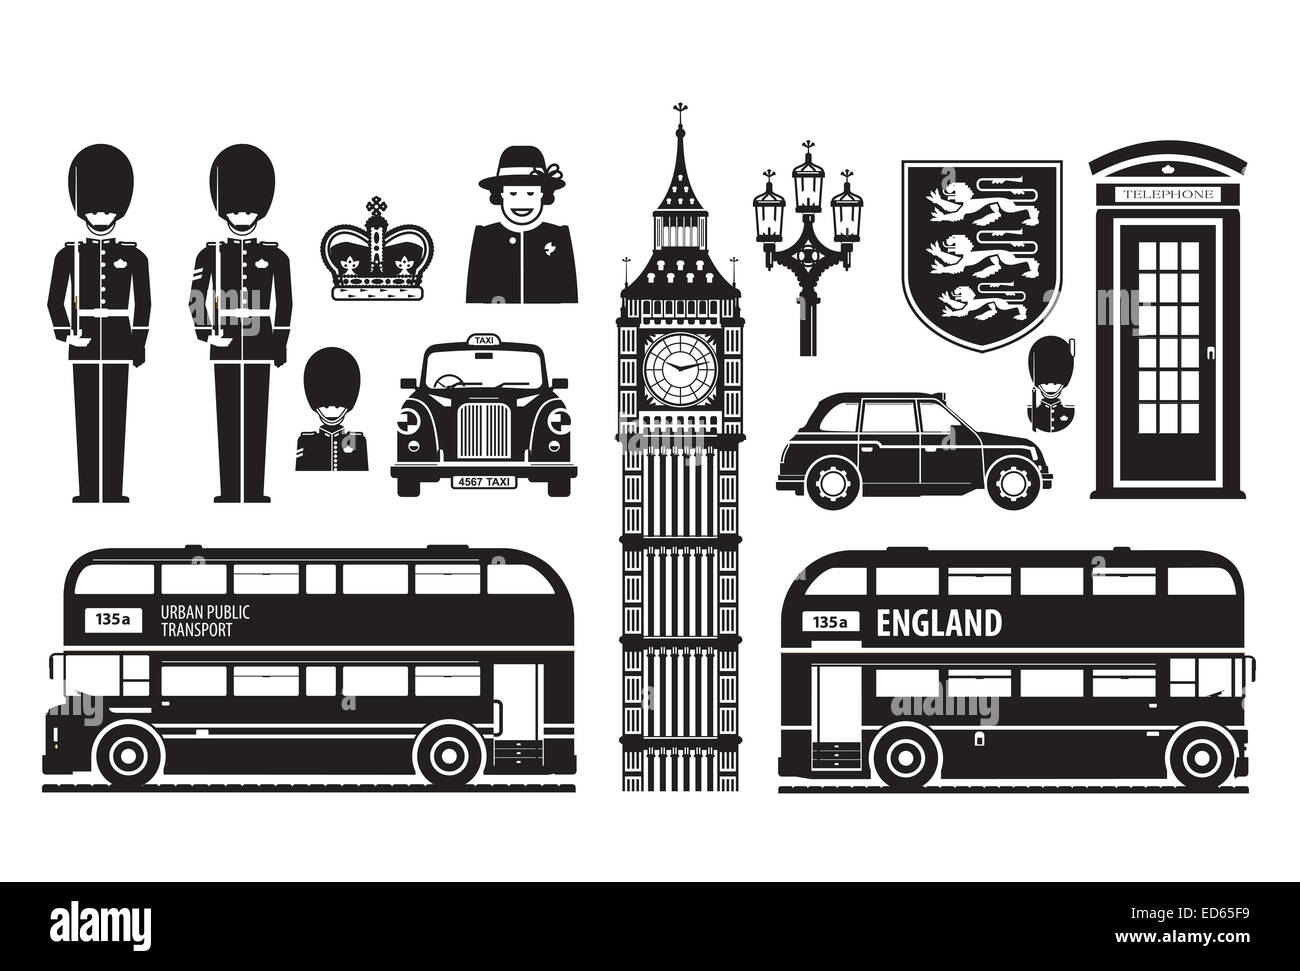 England, London, UK set of icons Stock Photo